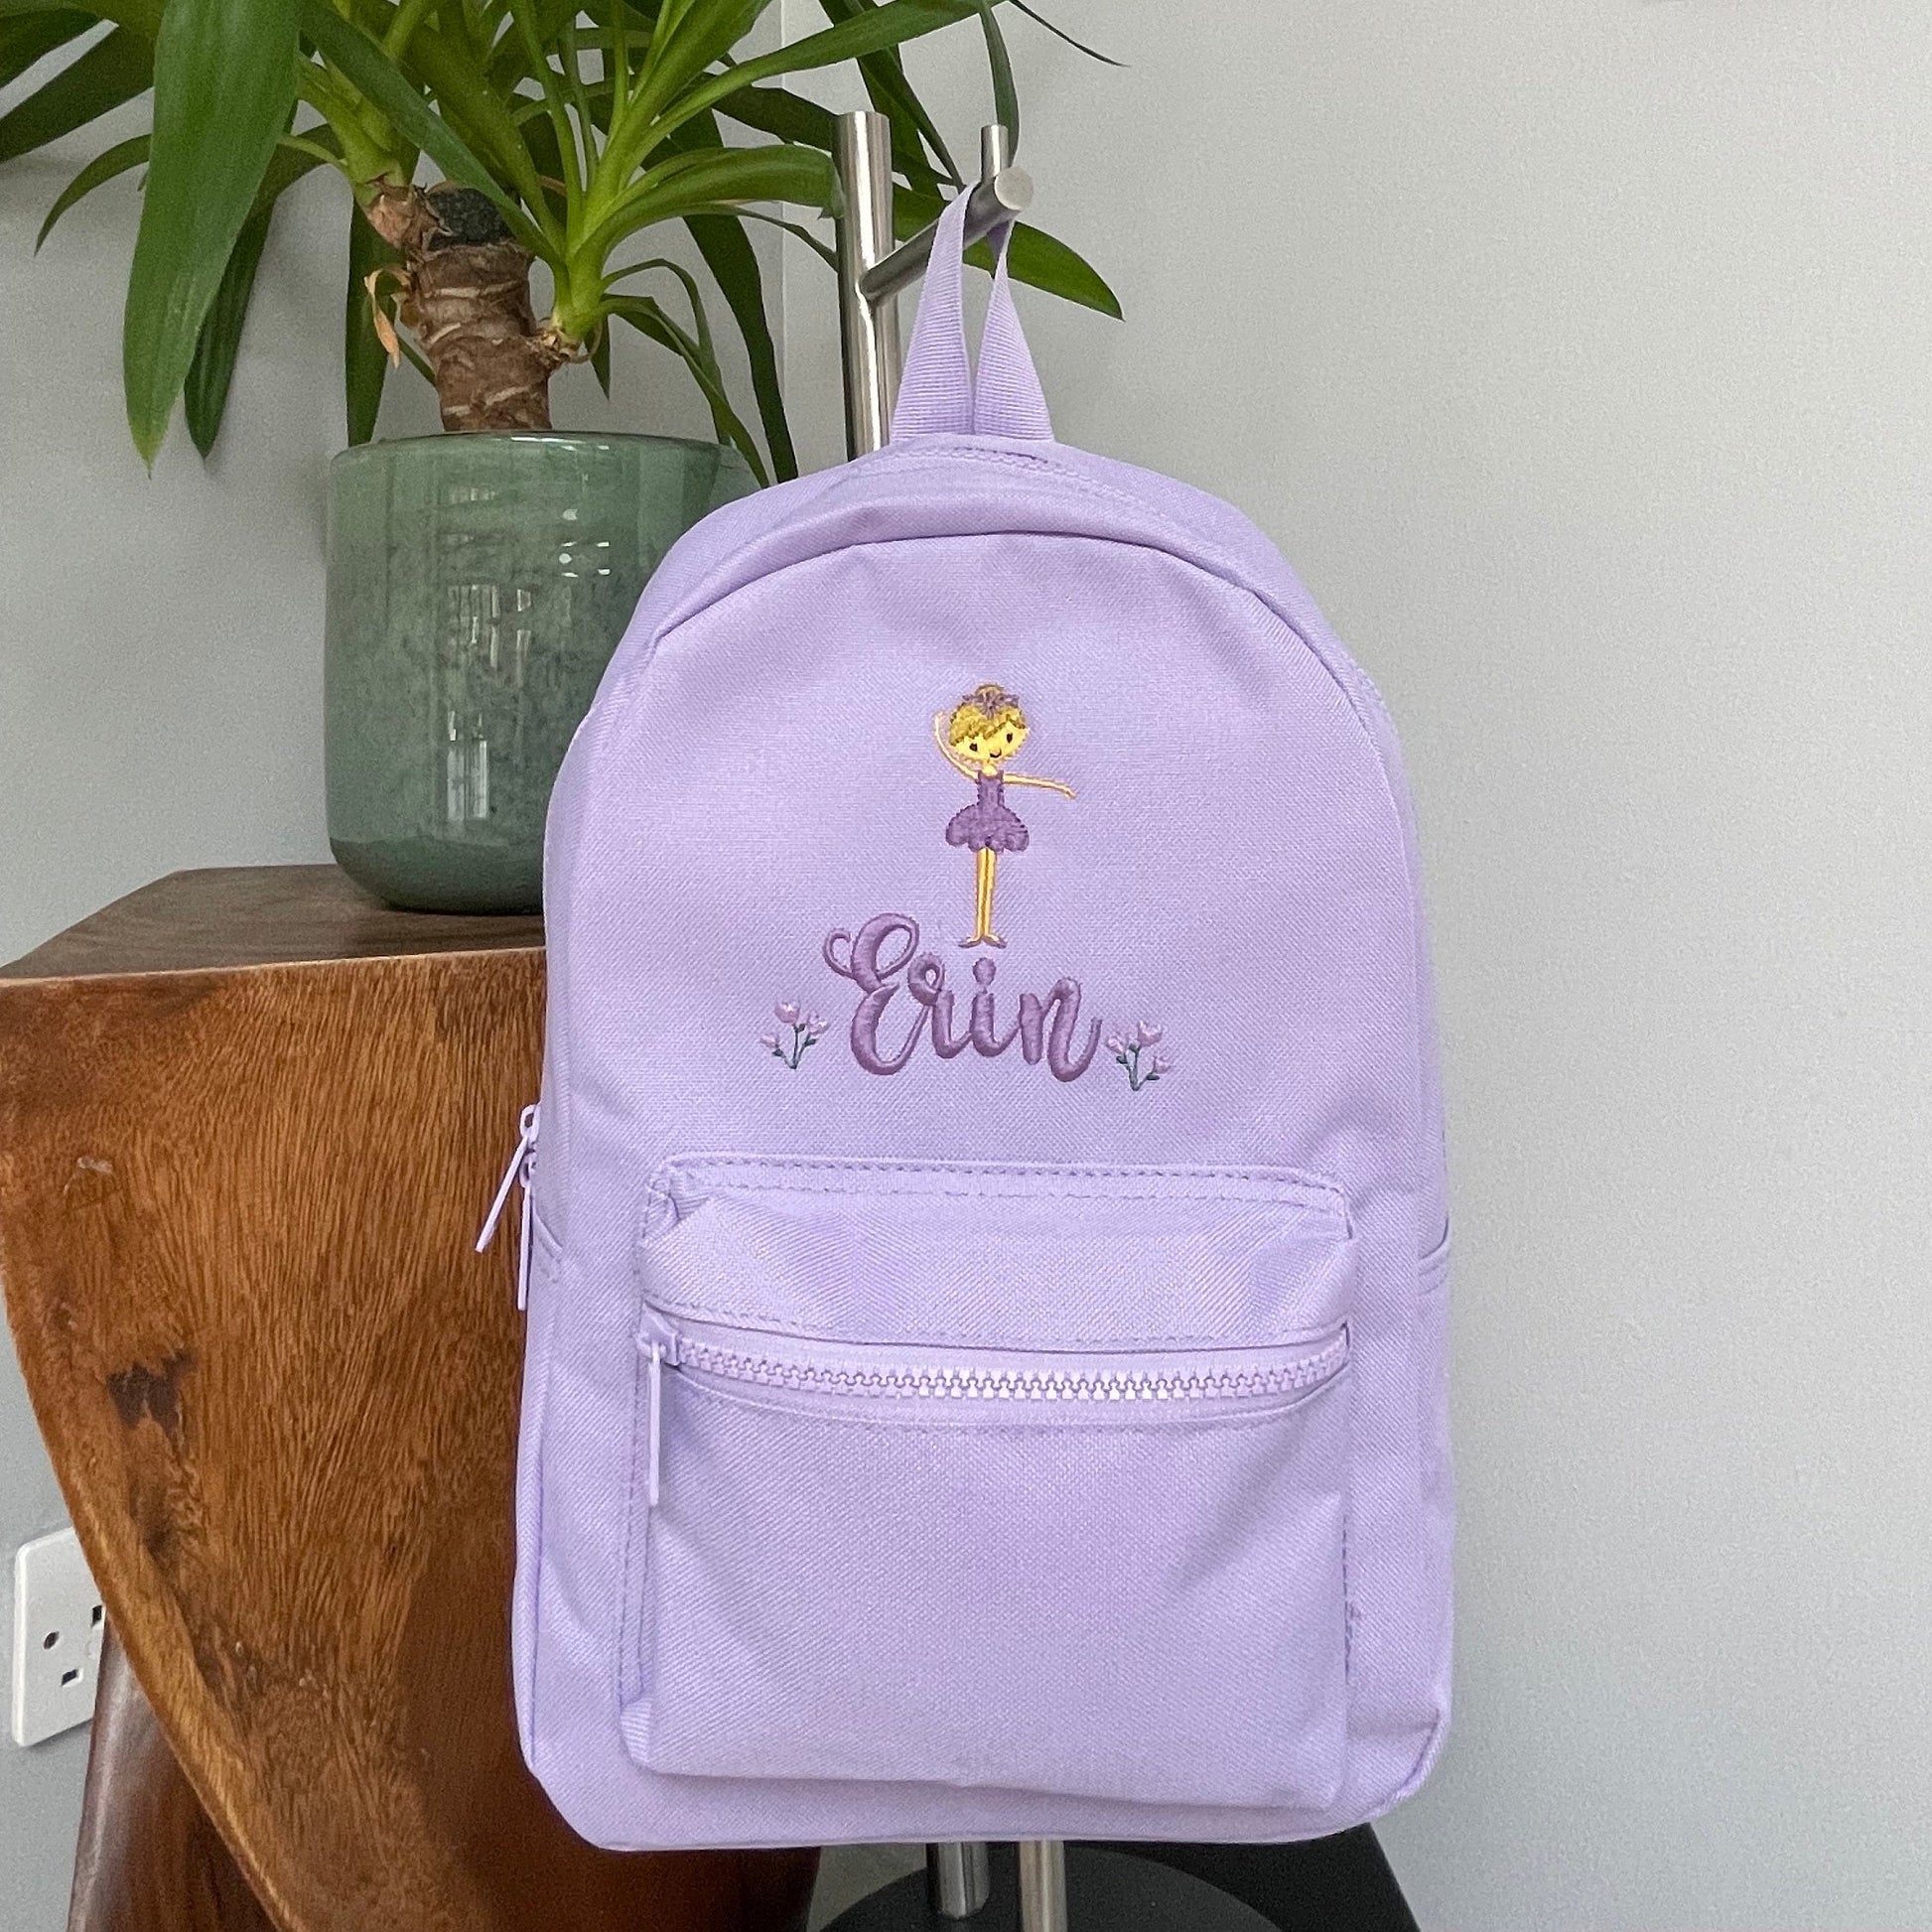 School Bag Toddler Backpack for Kids Purple Girls Daycare